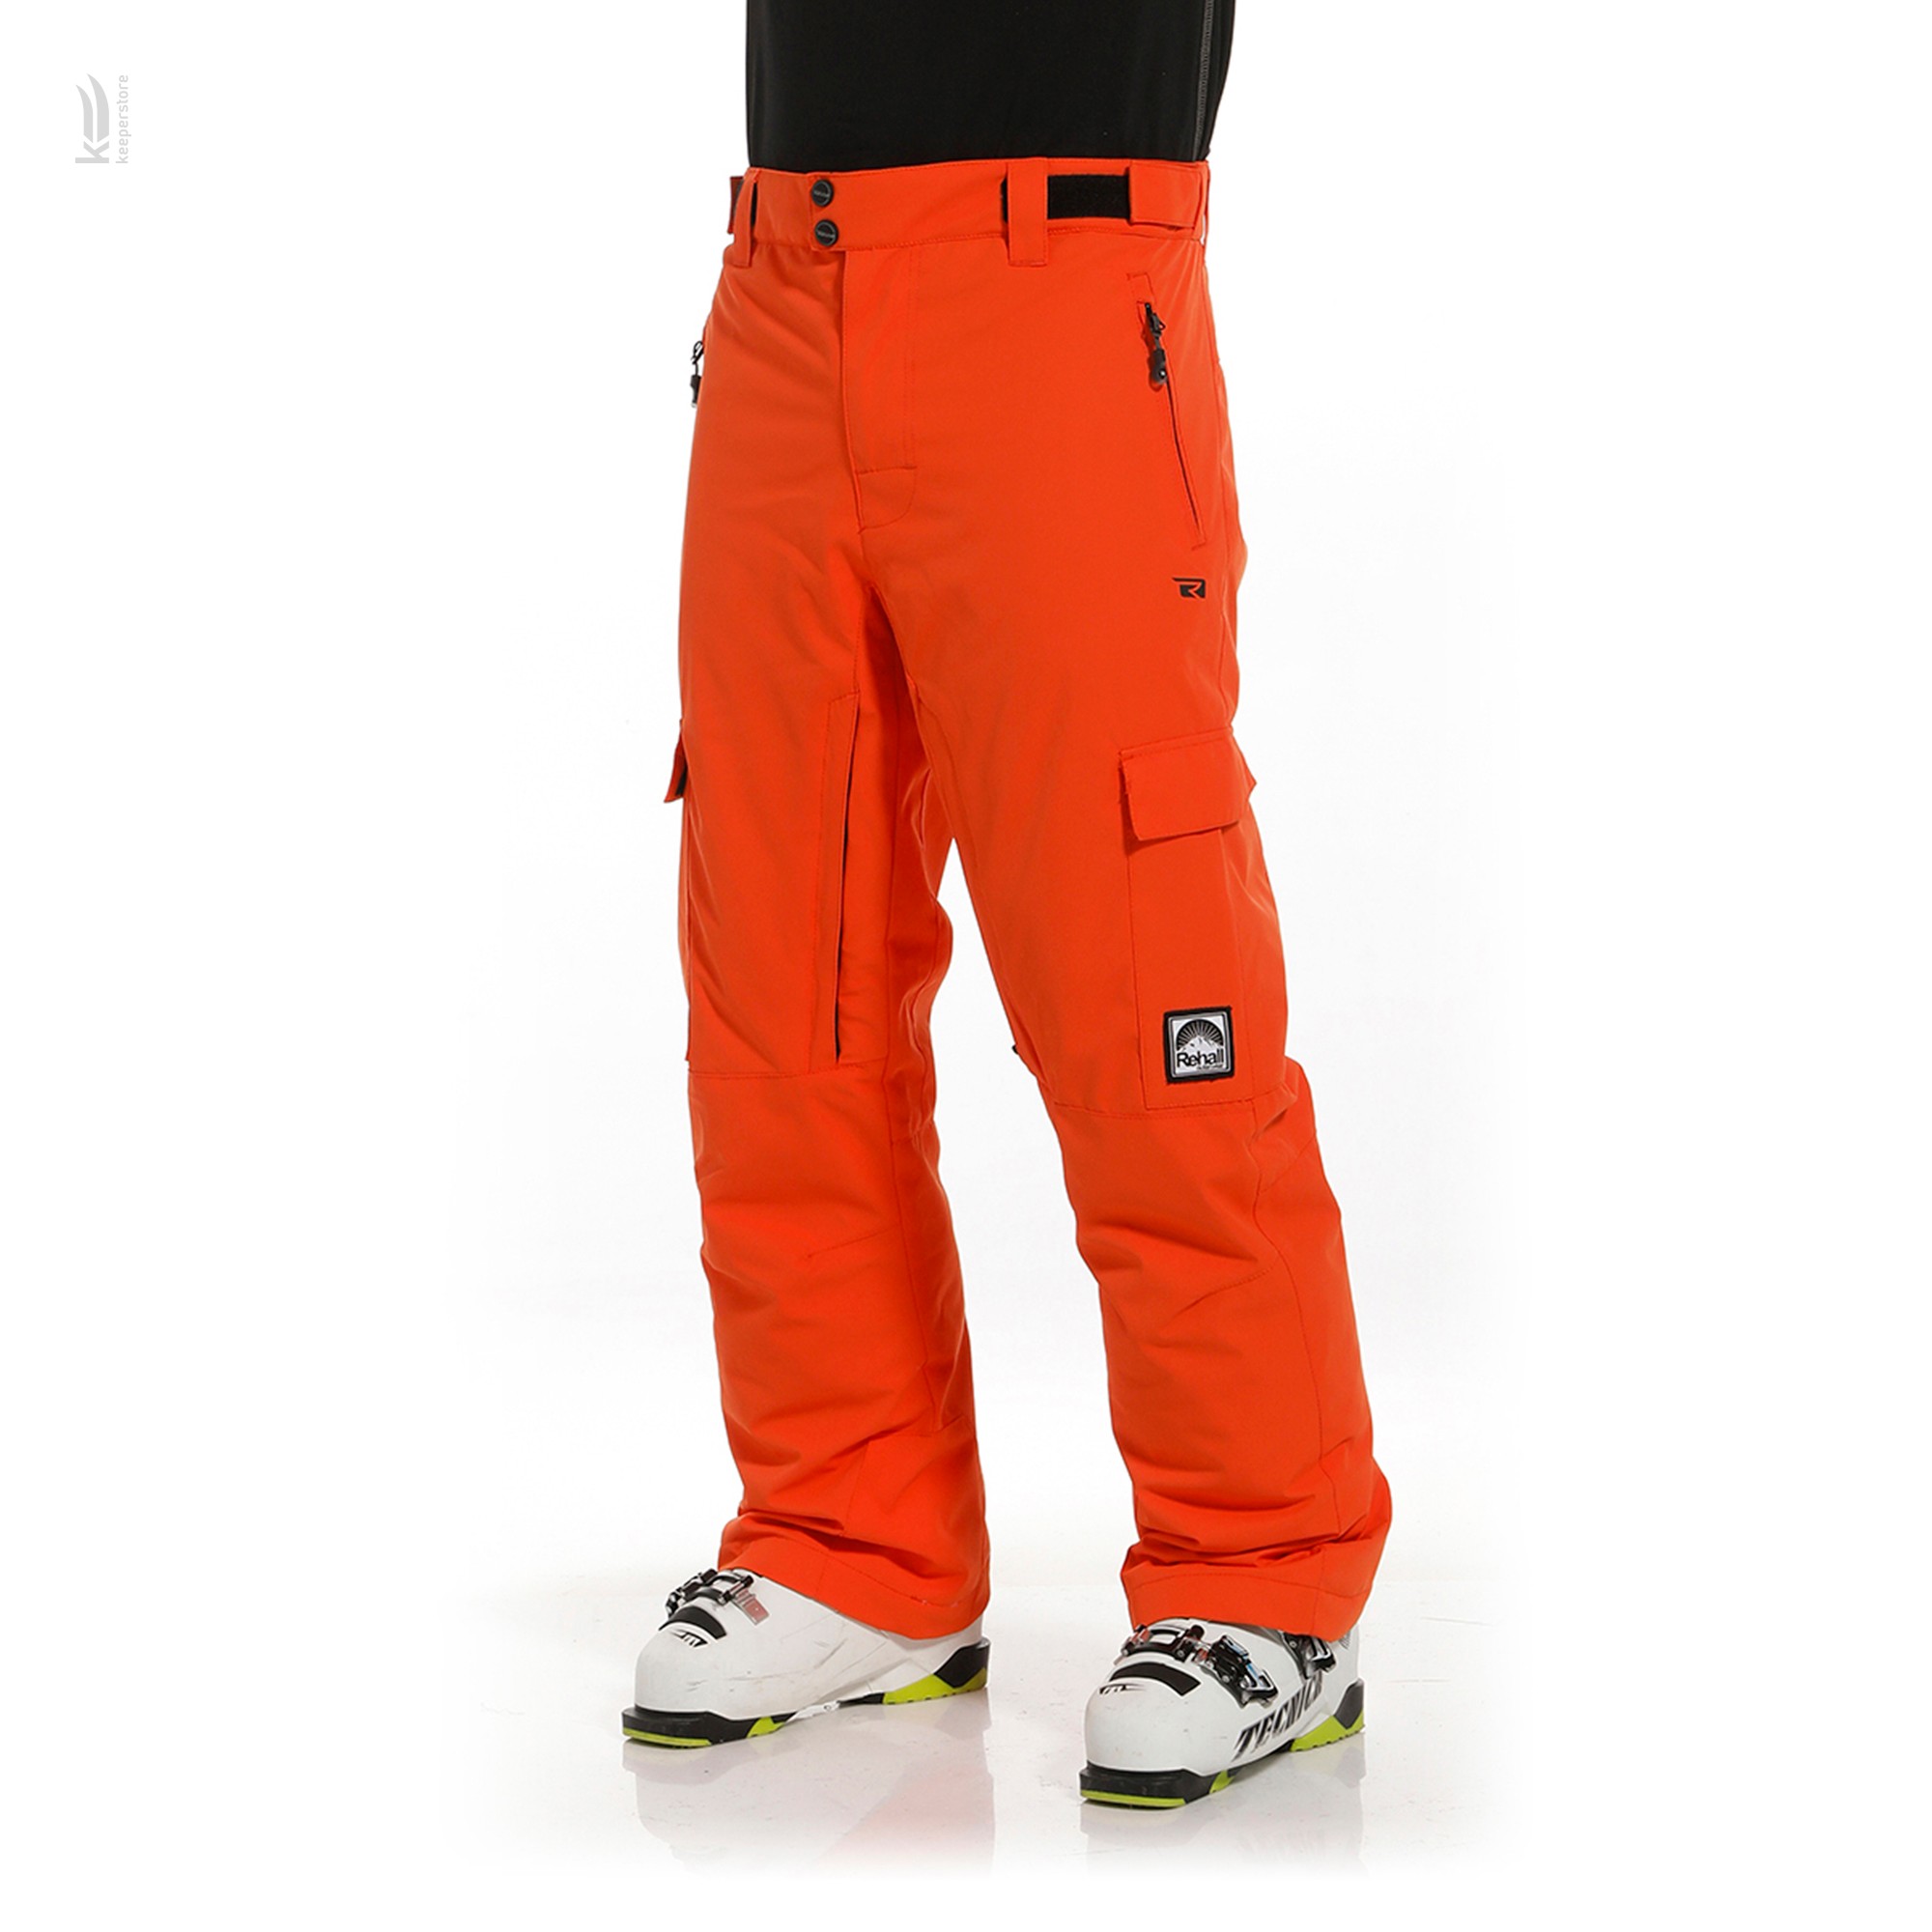 Отзывы оранжевые штаны Rehall EDGE-R Snowpants Mens Vibrant Orange (XL) в Украине